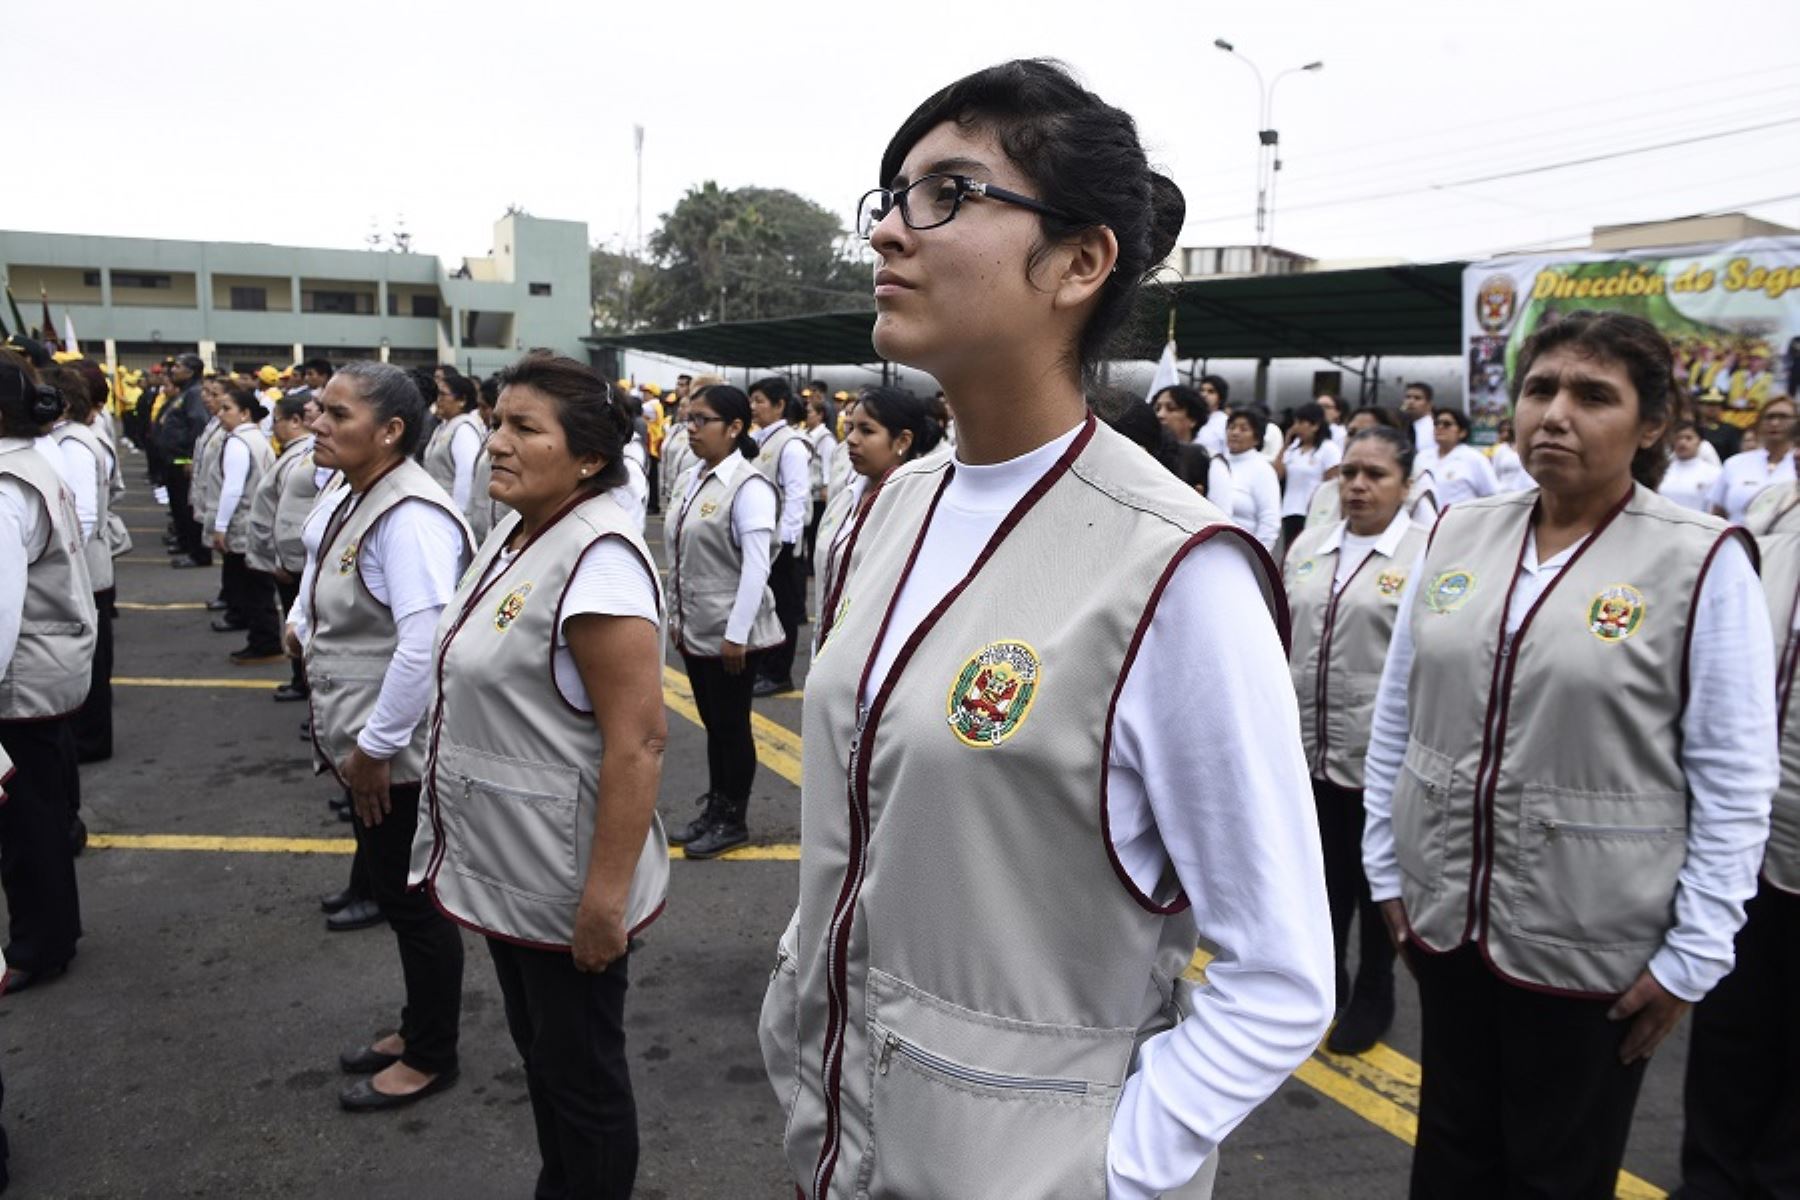 La Dirección de Seguridad Ciudadana de la Policía Nacional del Perú creó en lo que va del año 5,255 nuevas juntas vecinales en 14 regiones del país, sumando en total 14,119 de estos grupos organizados de vecinos para apoyar las labores de los agentes del orden.